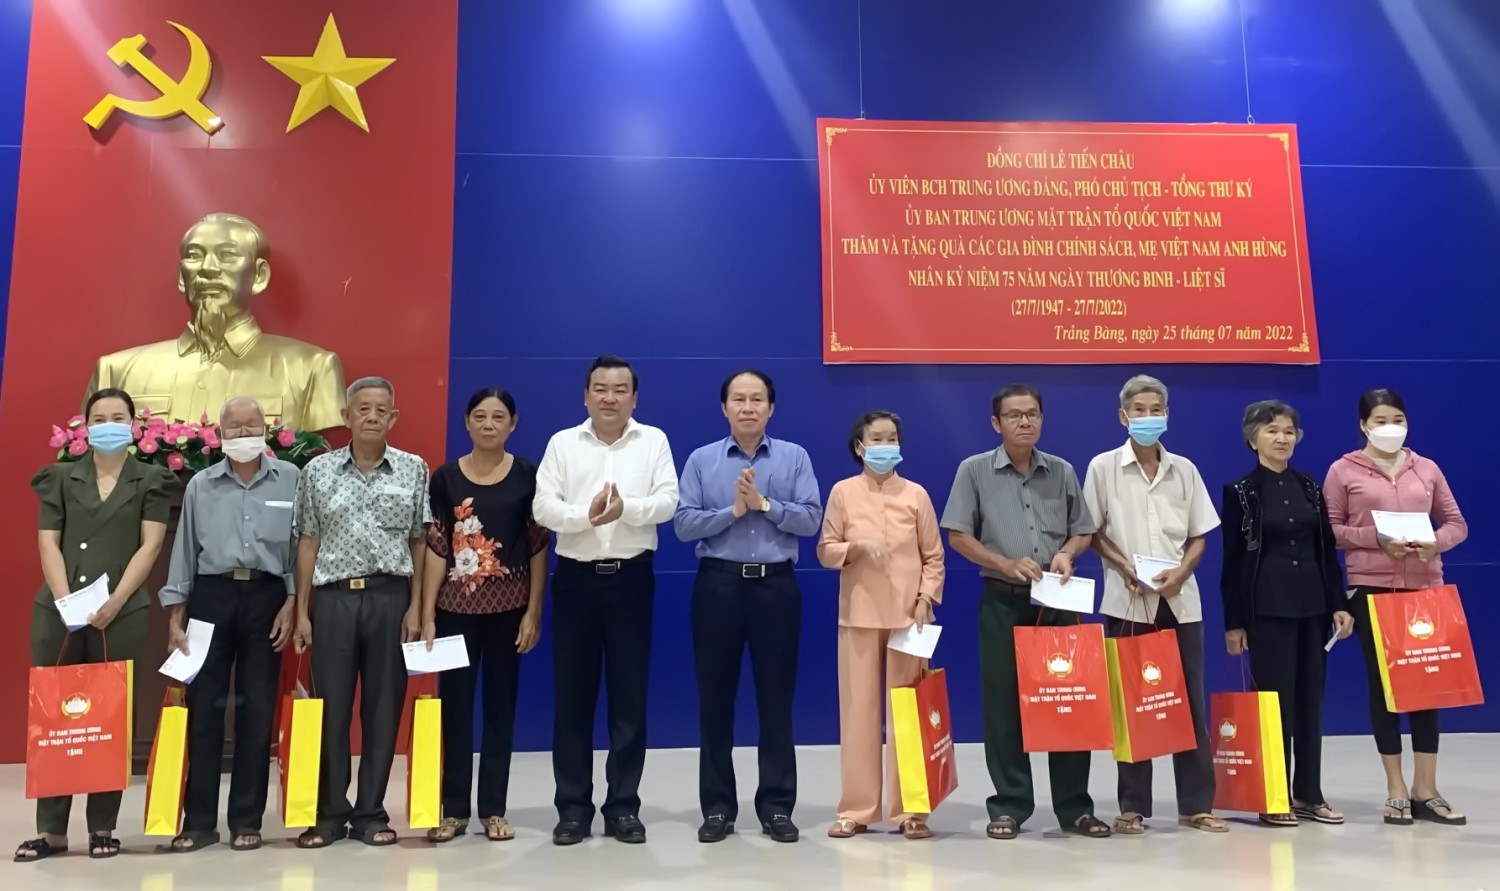 Ông Lê Tiến Châu và ông Phạm Hùng Thái tặng quà cho các gia đình chính sách trên địa bàn thị xã Trảng Bàng.